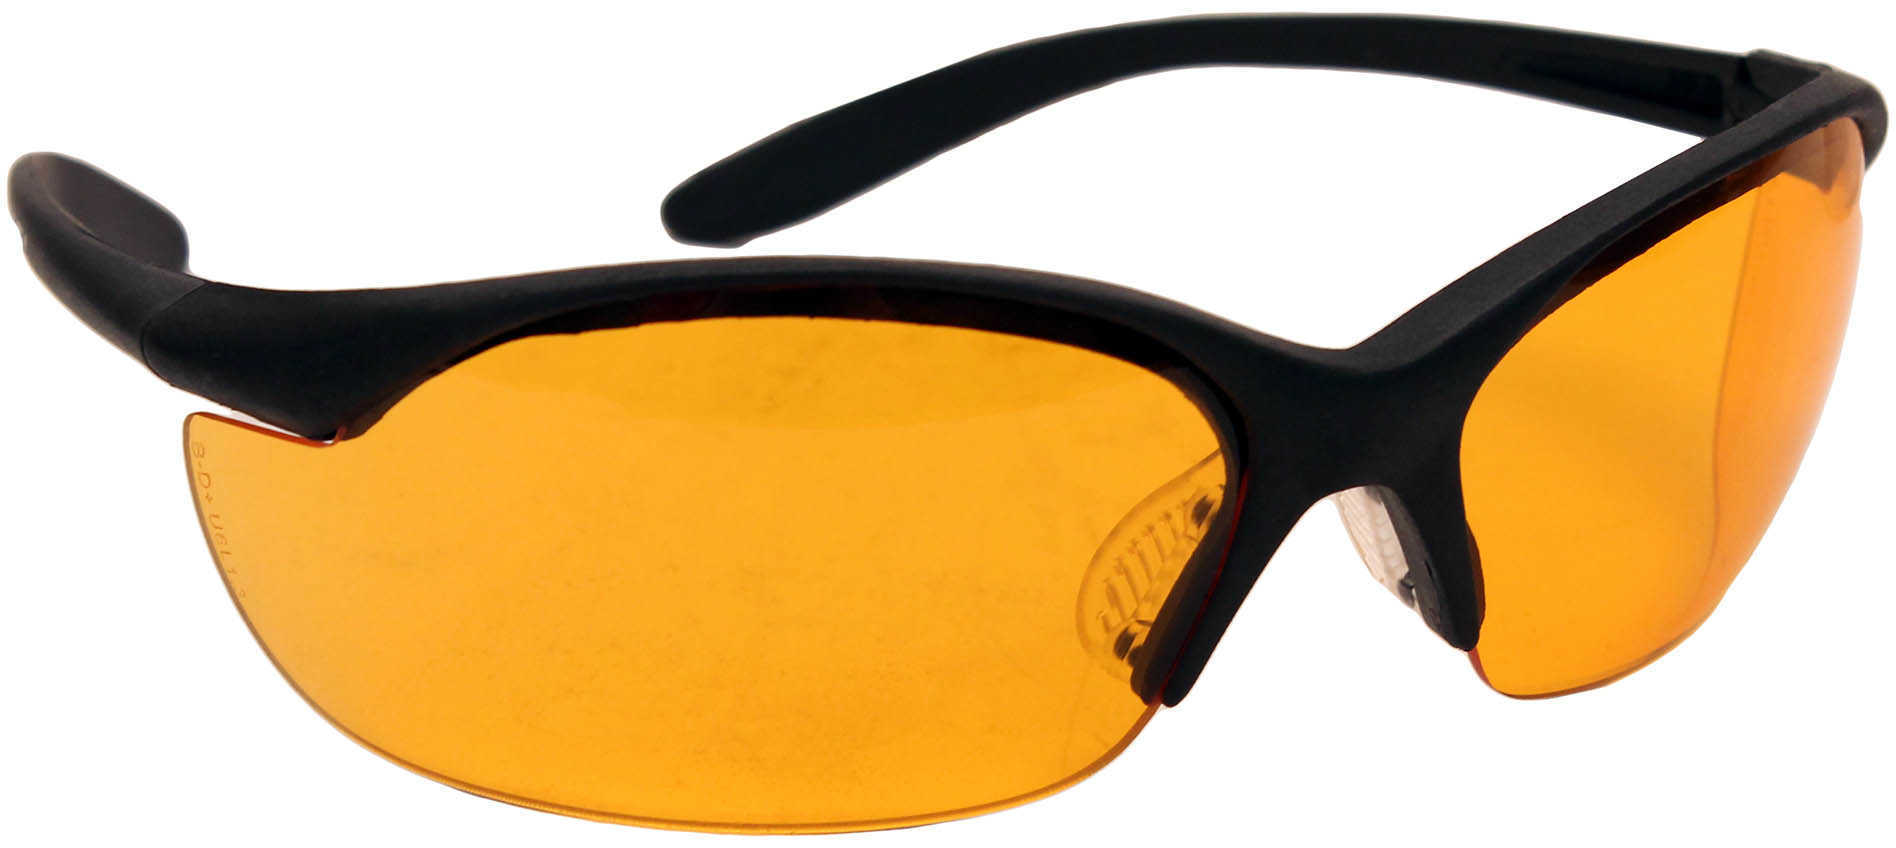 Howard Leight Vapor II Glasses Black Frame Orange Lens R-01537